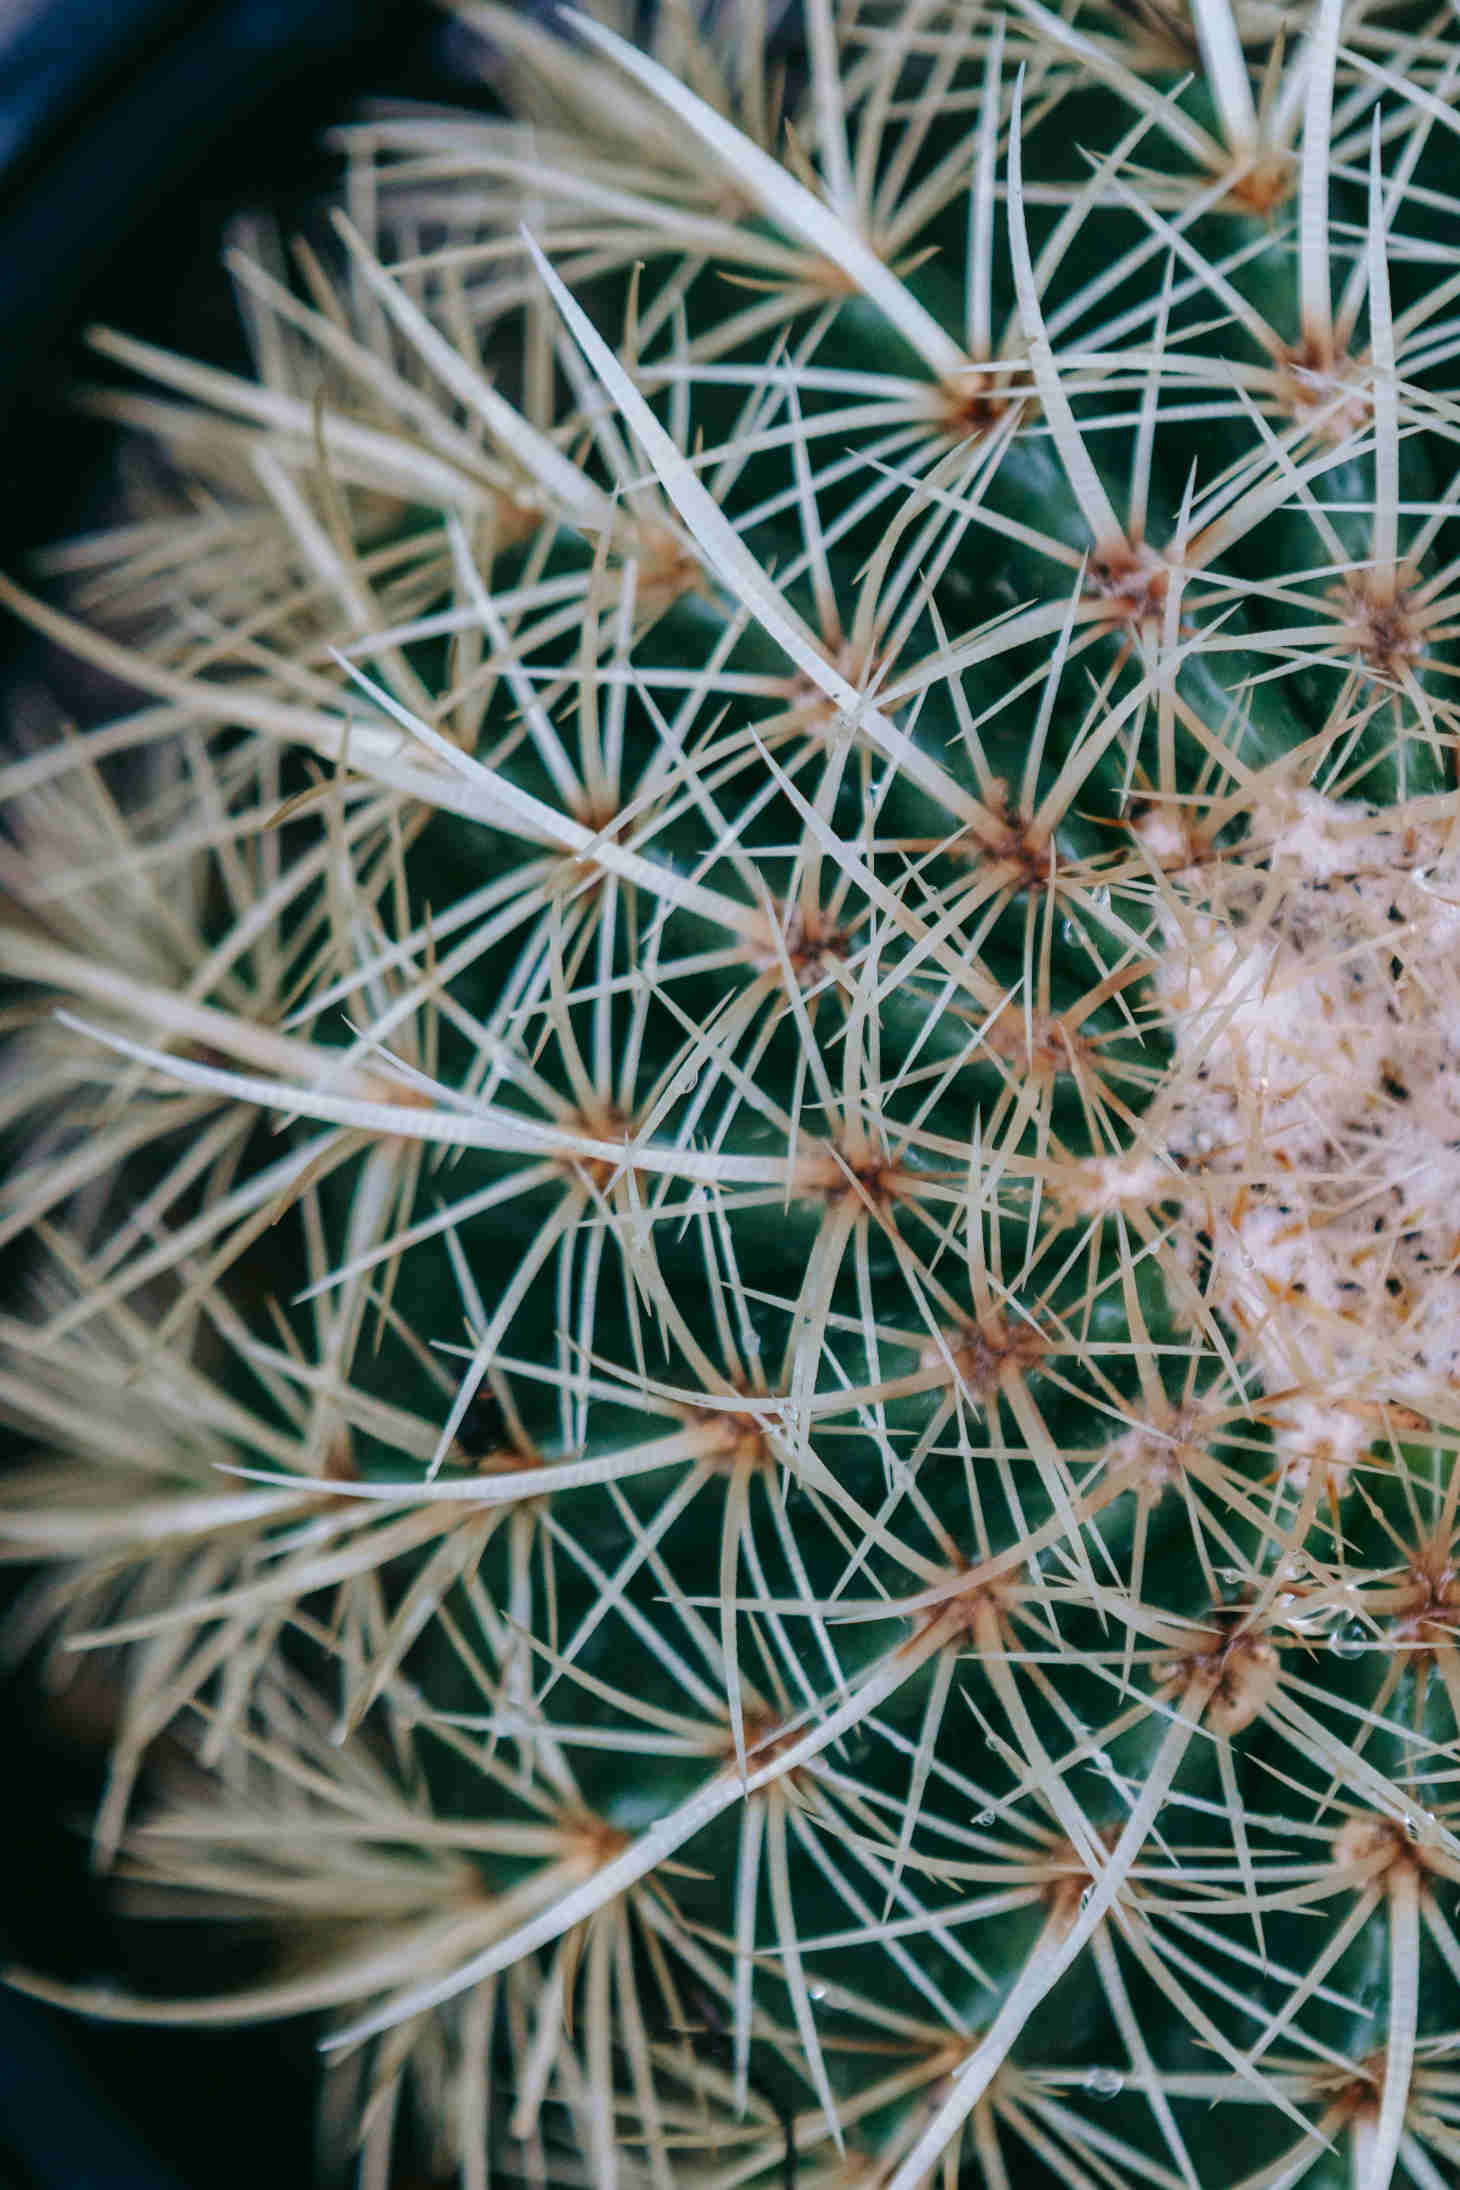 Closeup of Cactus Spines